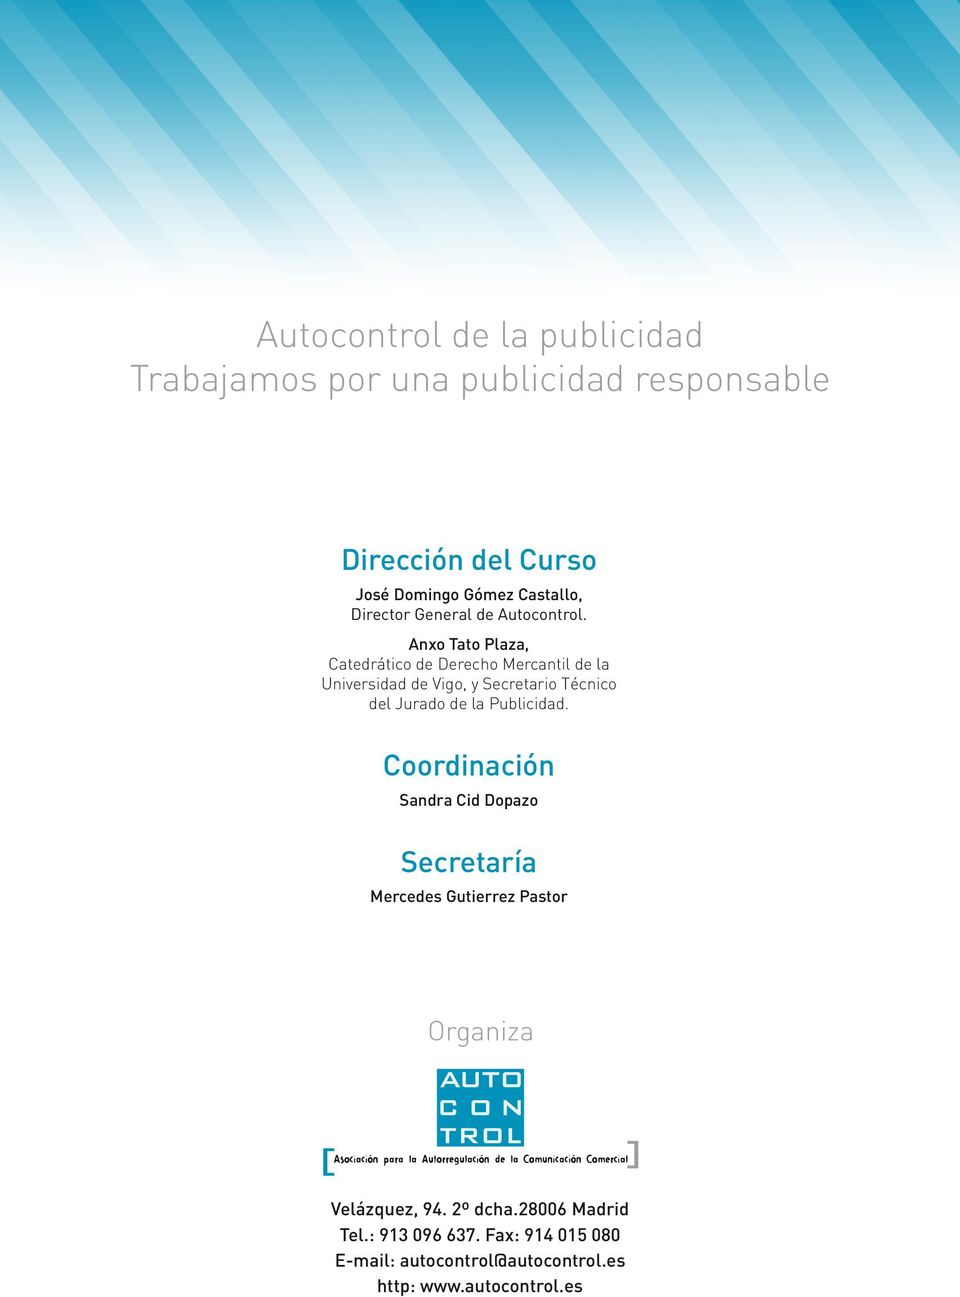 Anxo Tato Plaza, Catedrático de Derecho Mercantil de la Universidad de Vigo, y Secretario Técnico del Jurado de la